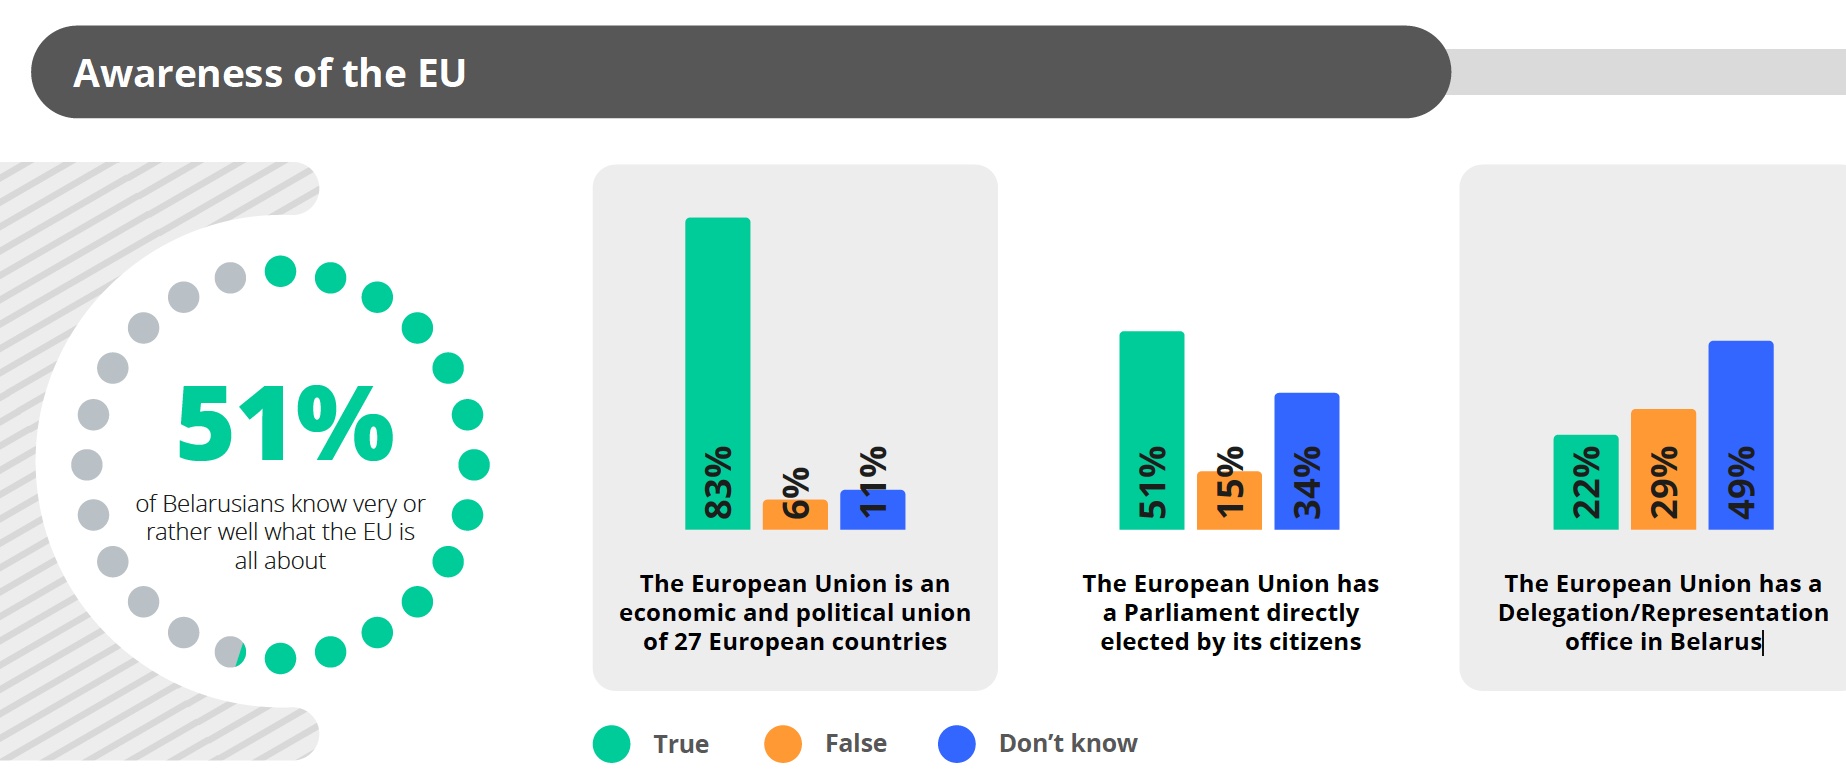 Только 16% беларусов негативно относятся к Европейскому союзу